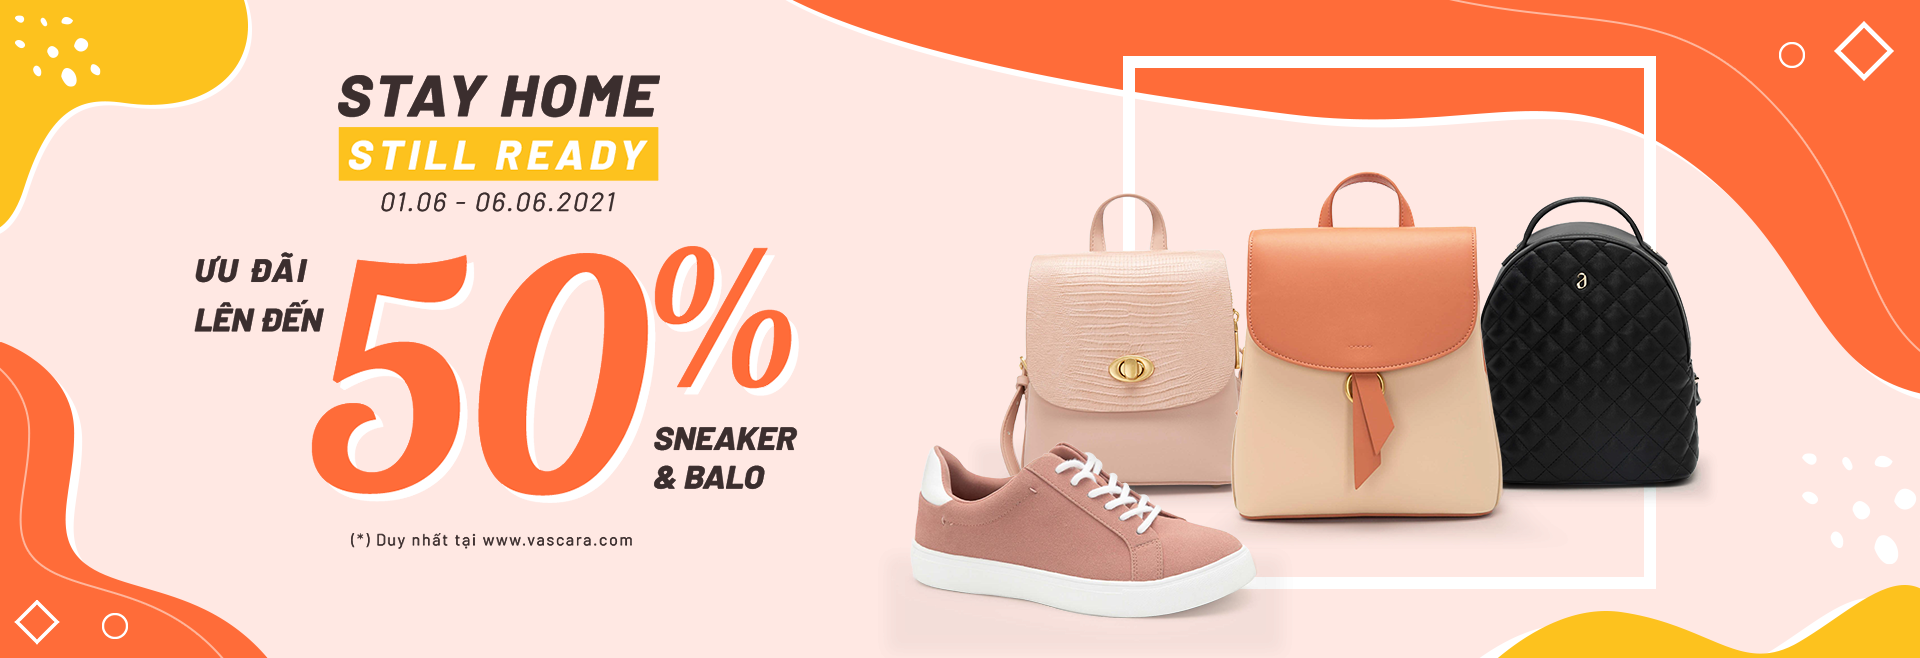 Giảm 15% cho các sản phẩm Balo & Sneaker